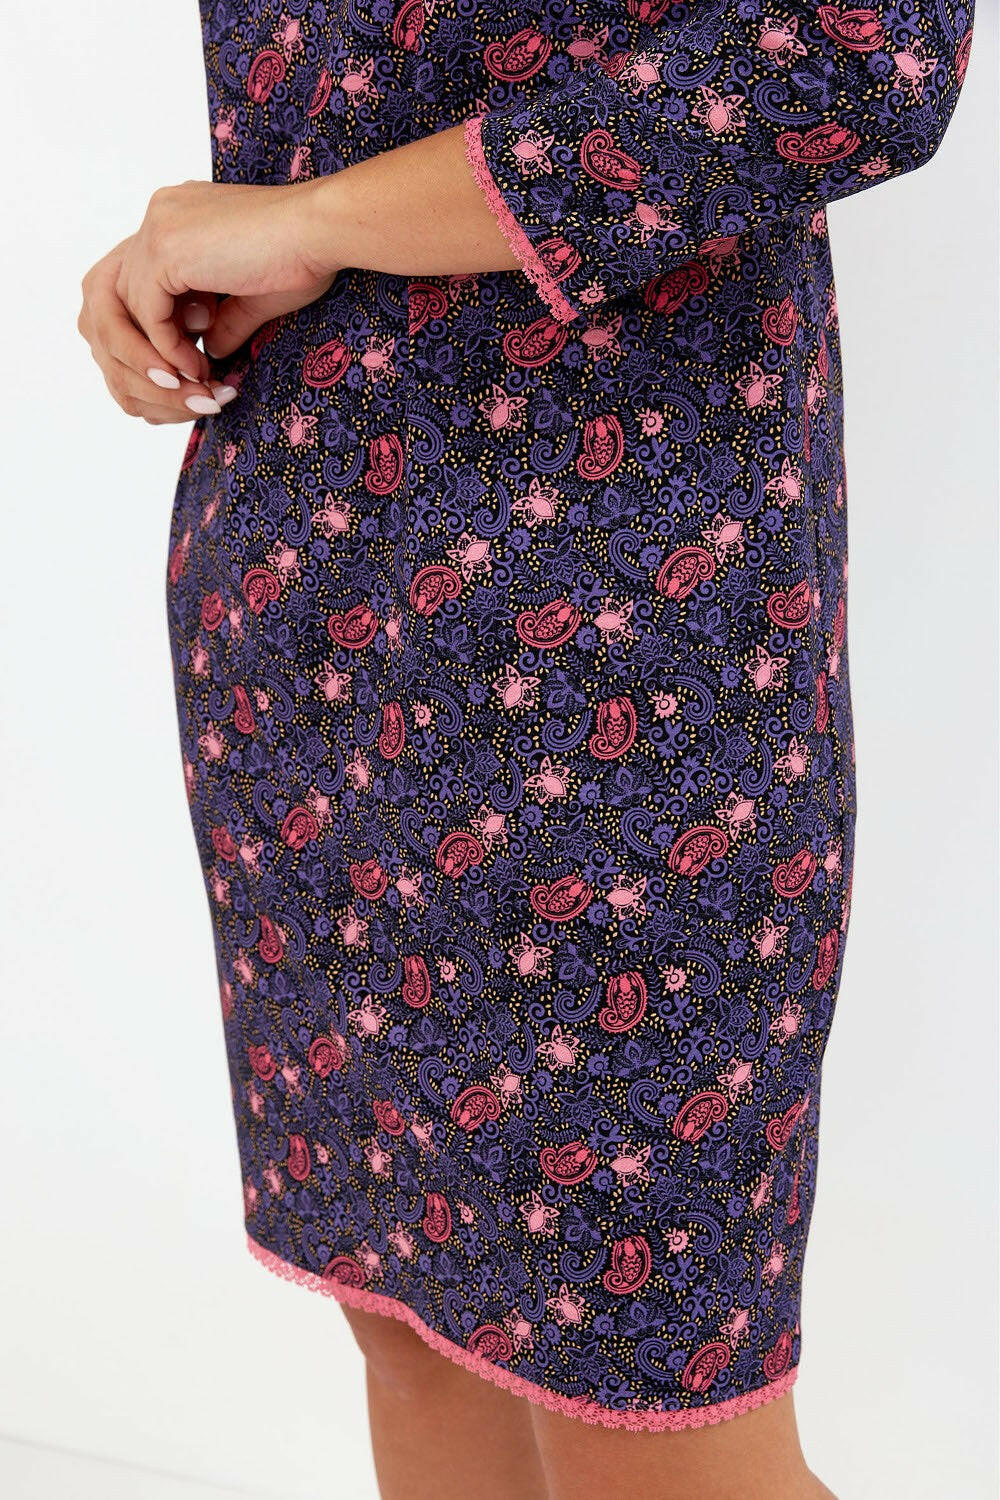 Camicia da notte da donna realizzata in cotone di alta qualità in fantasia floreale. Manica 7/8 rifinita con pizzo, scollo rotondo, lunghezza al ginocchio con fondo rifinito con morbido pizzo.